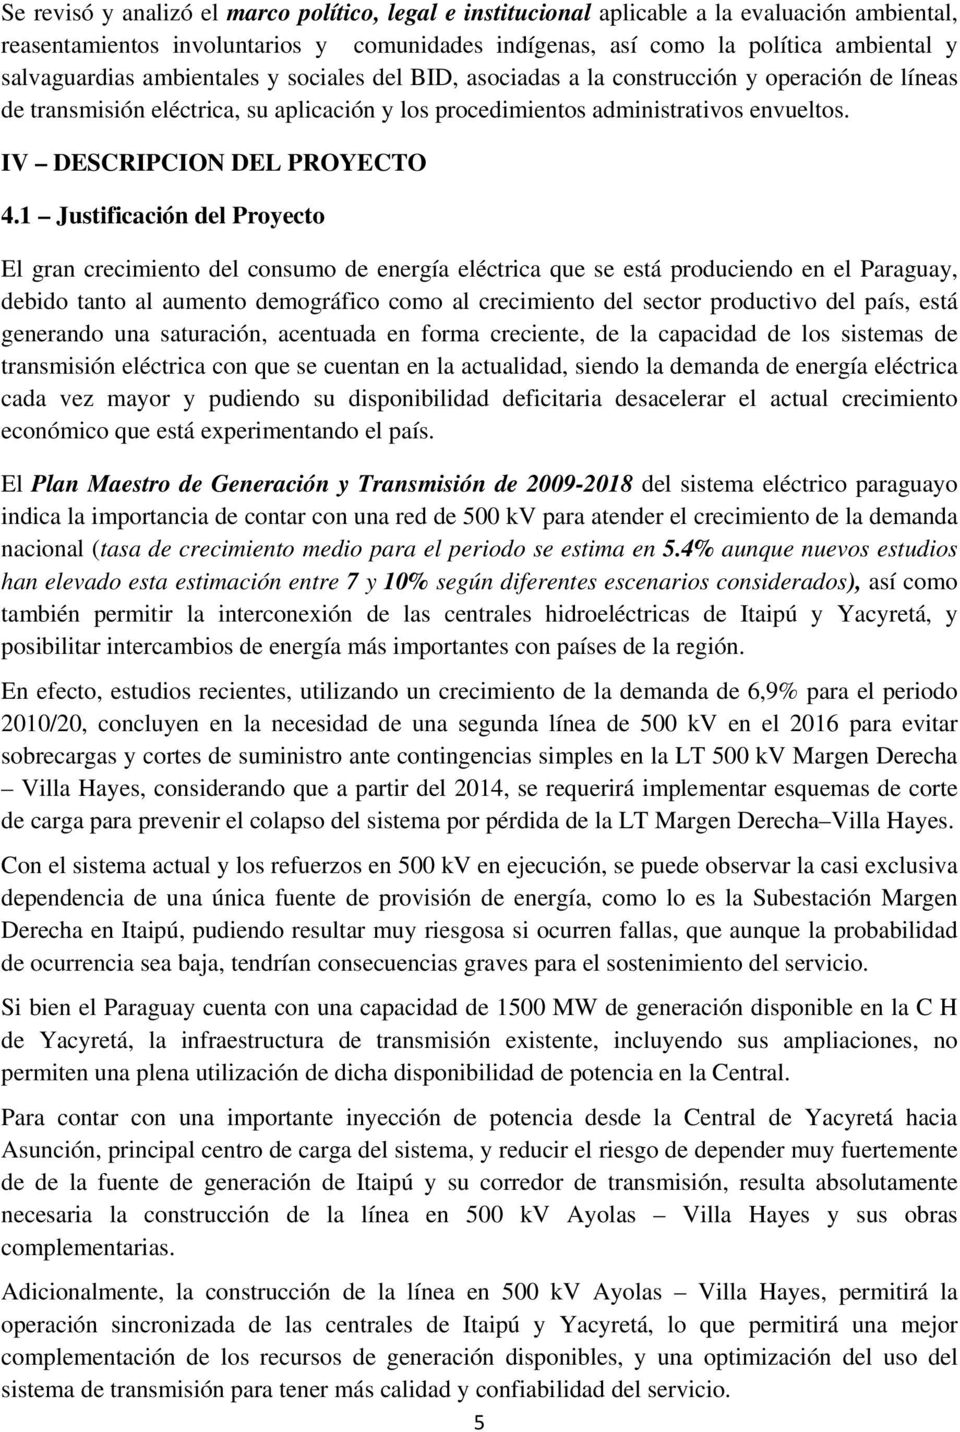 1 Justificación del Proyecto El gran crecimiento del consumo de energía eléctrica que se está produciendo en el Paraguay, debido tanto al aumento demográfico como al crecimiento del sector productivo